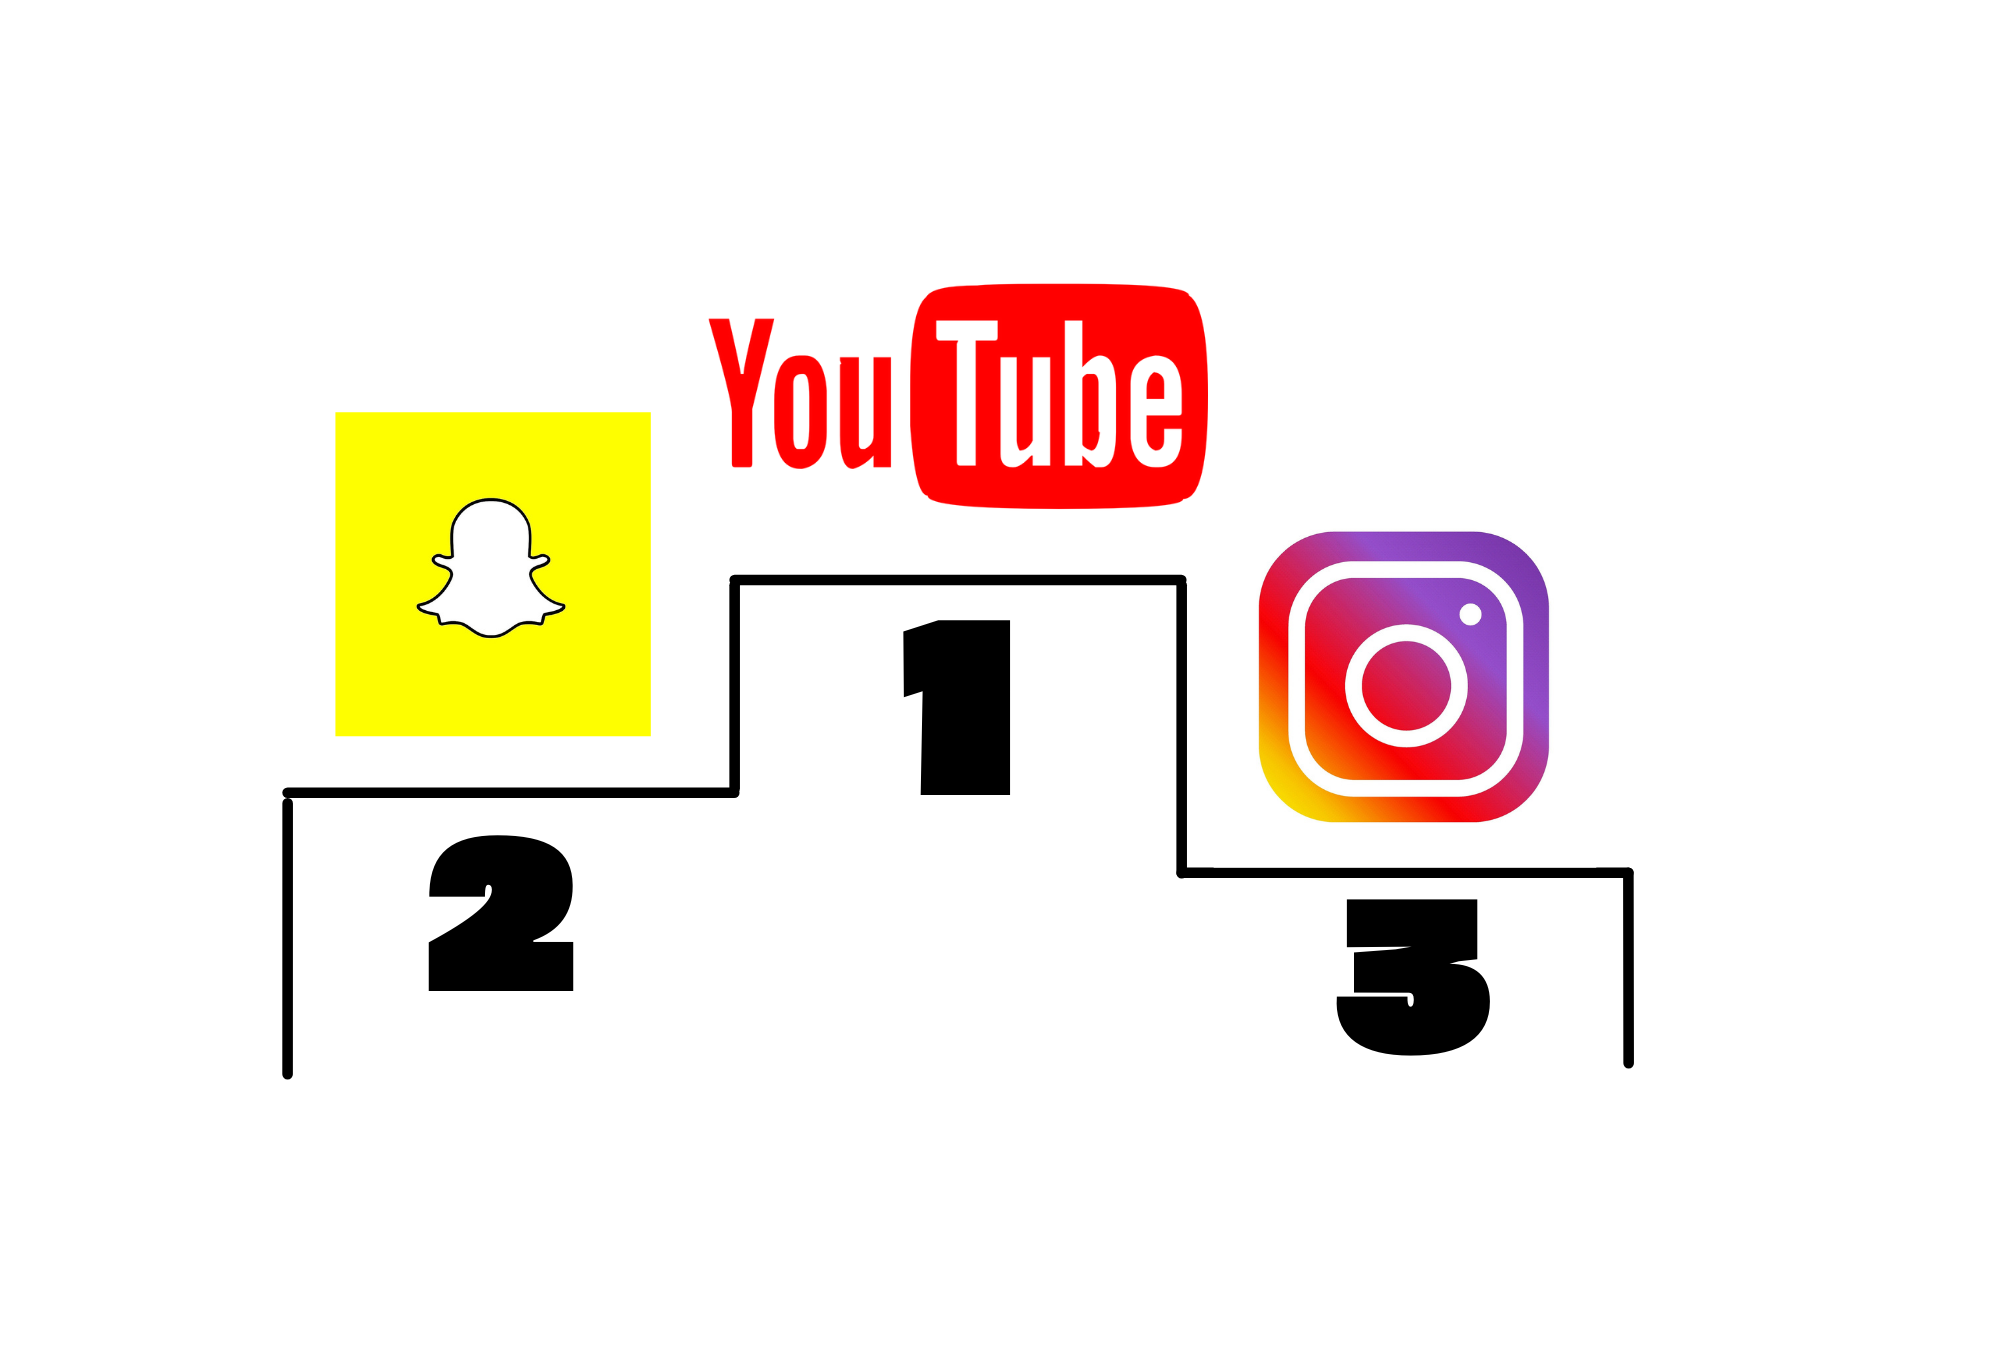 Ein Siegertreppchen: Youtube steht auf dem ersten Platz, Snapchat auf dem zweiten und Instagram auf dem dritten.